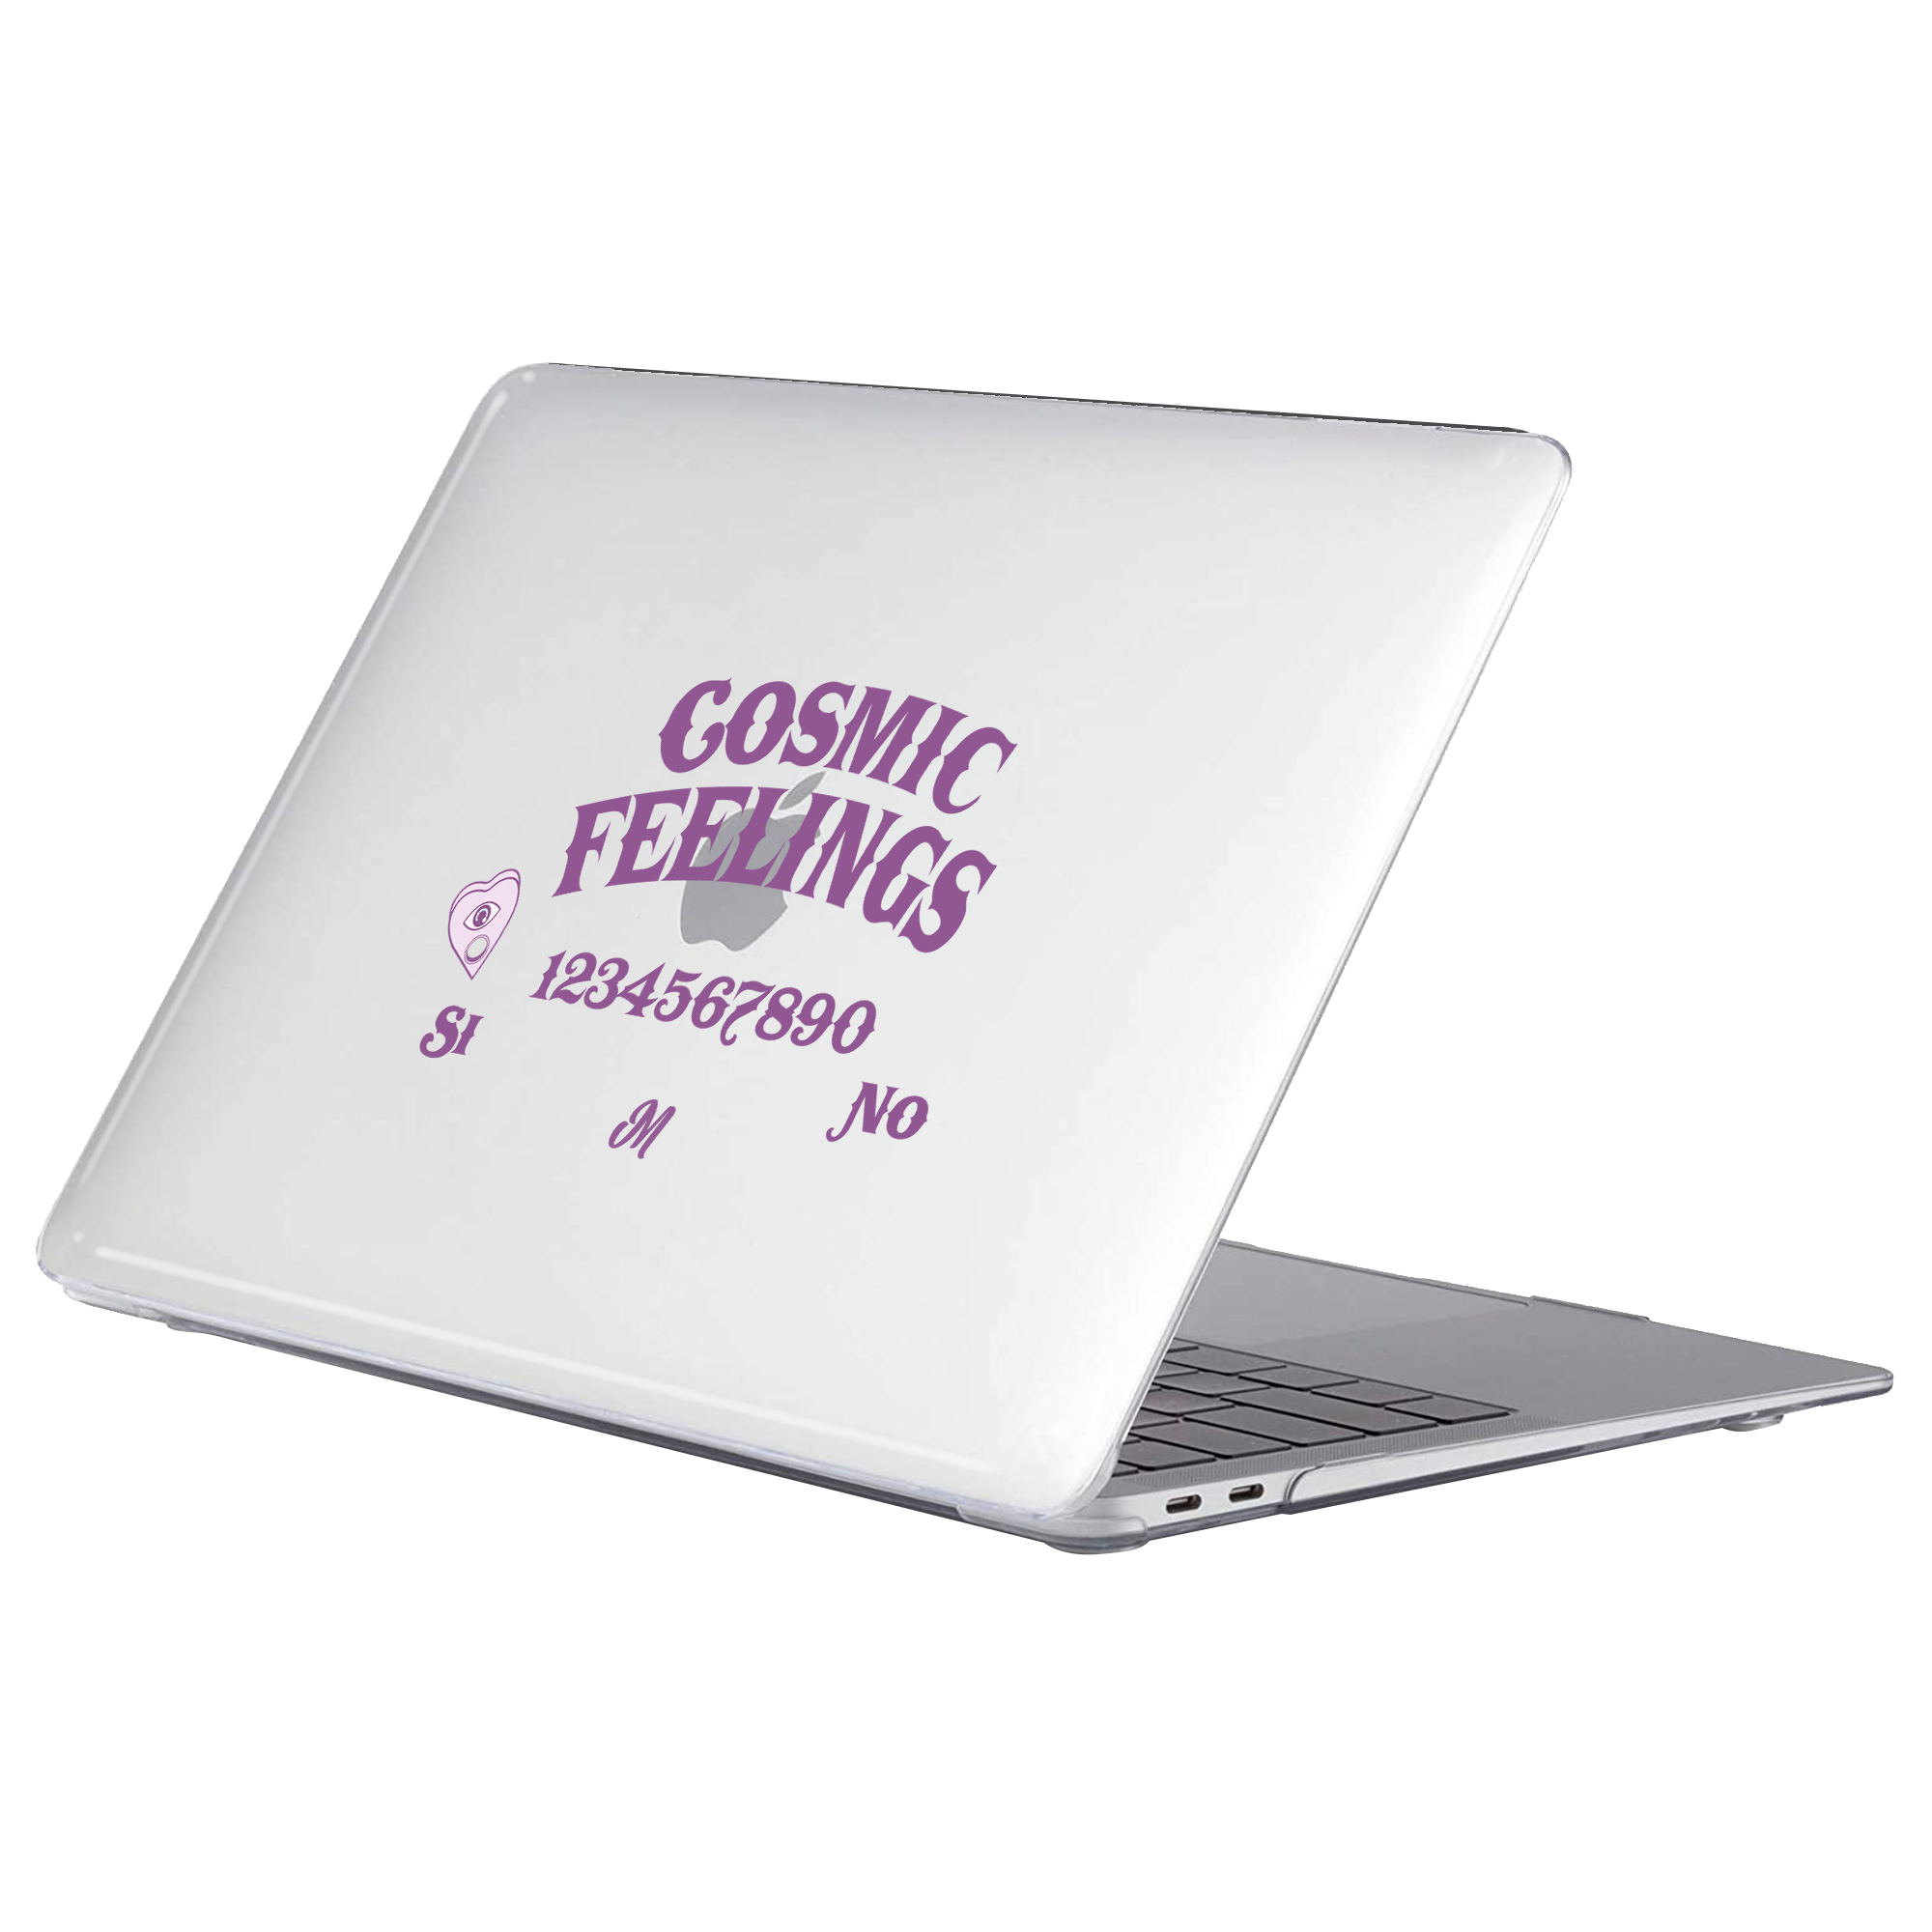 Cosmic Feelings MacBook Case - Mandala Cases